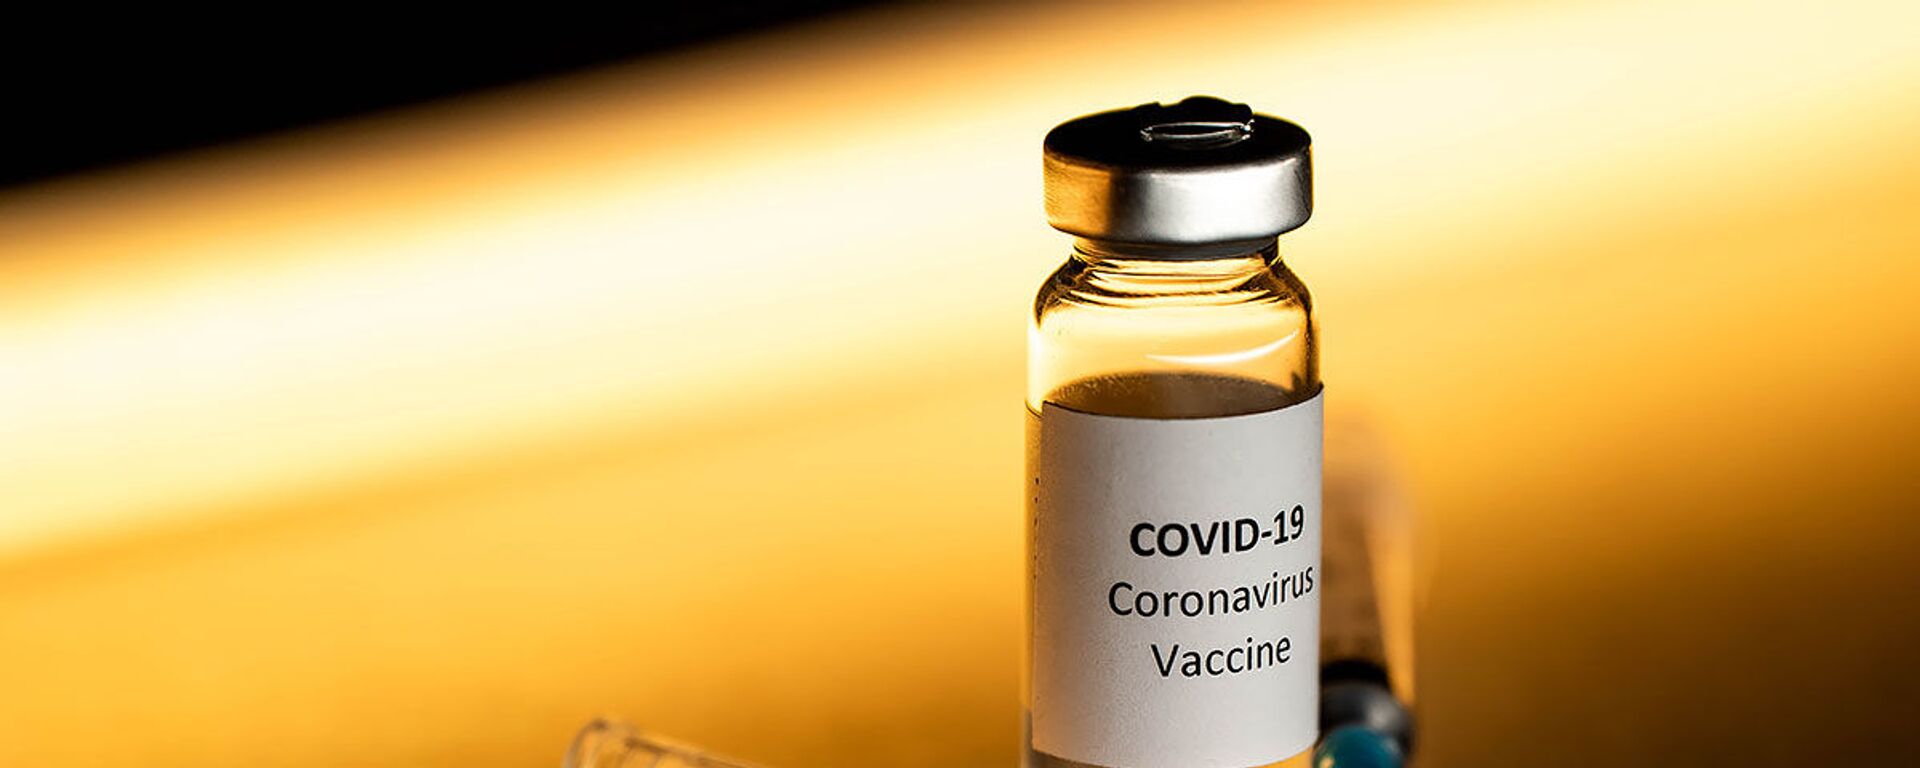 Вакцина от коронавируса, архивное фото - Sputnik Грузия, 1920, 24.11.2021